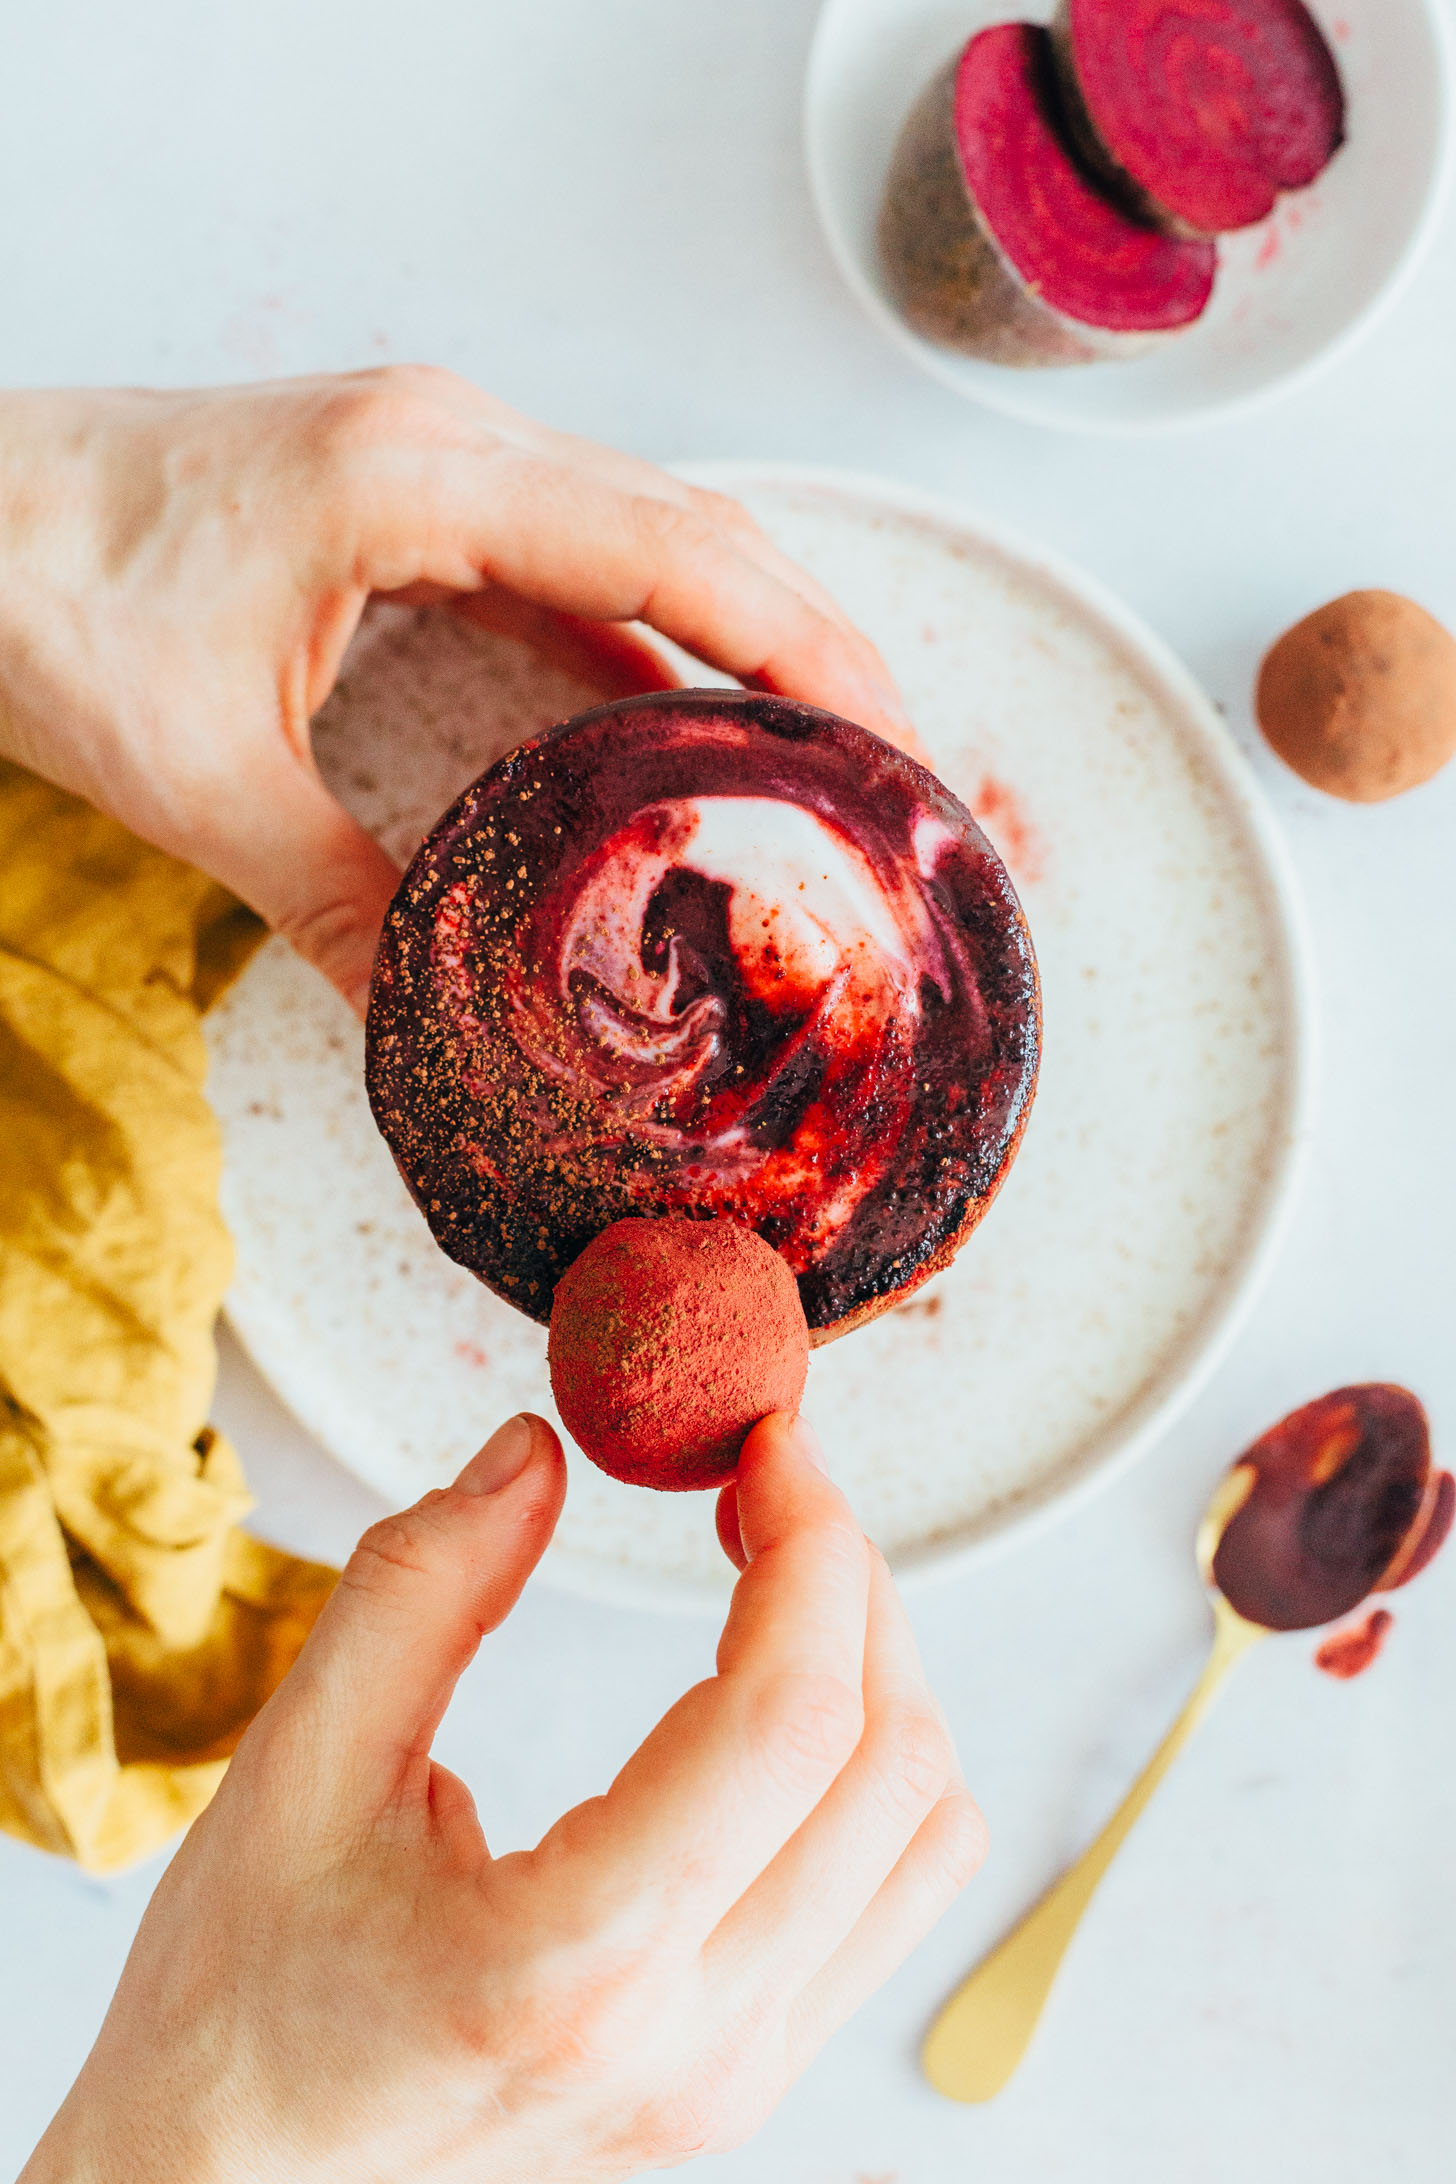 Placing a cake bite onto a red velvet smoothie